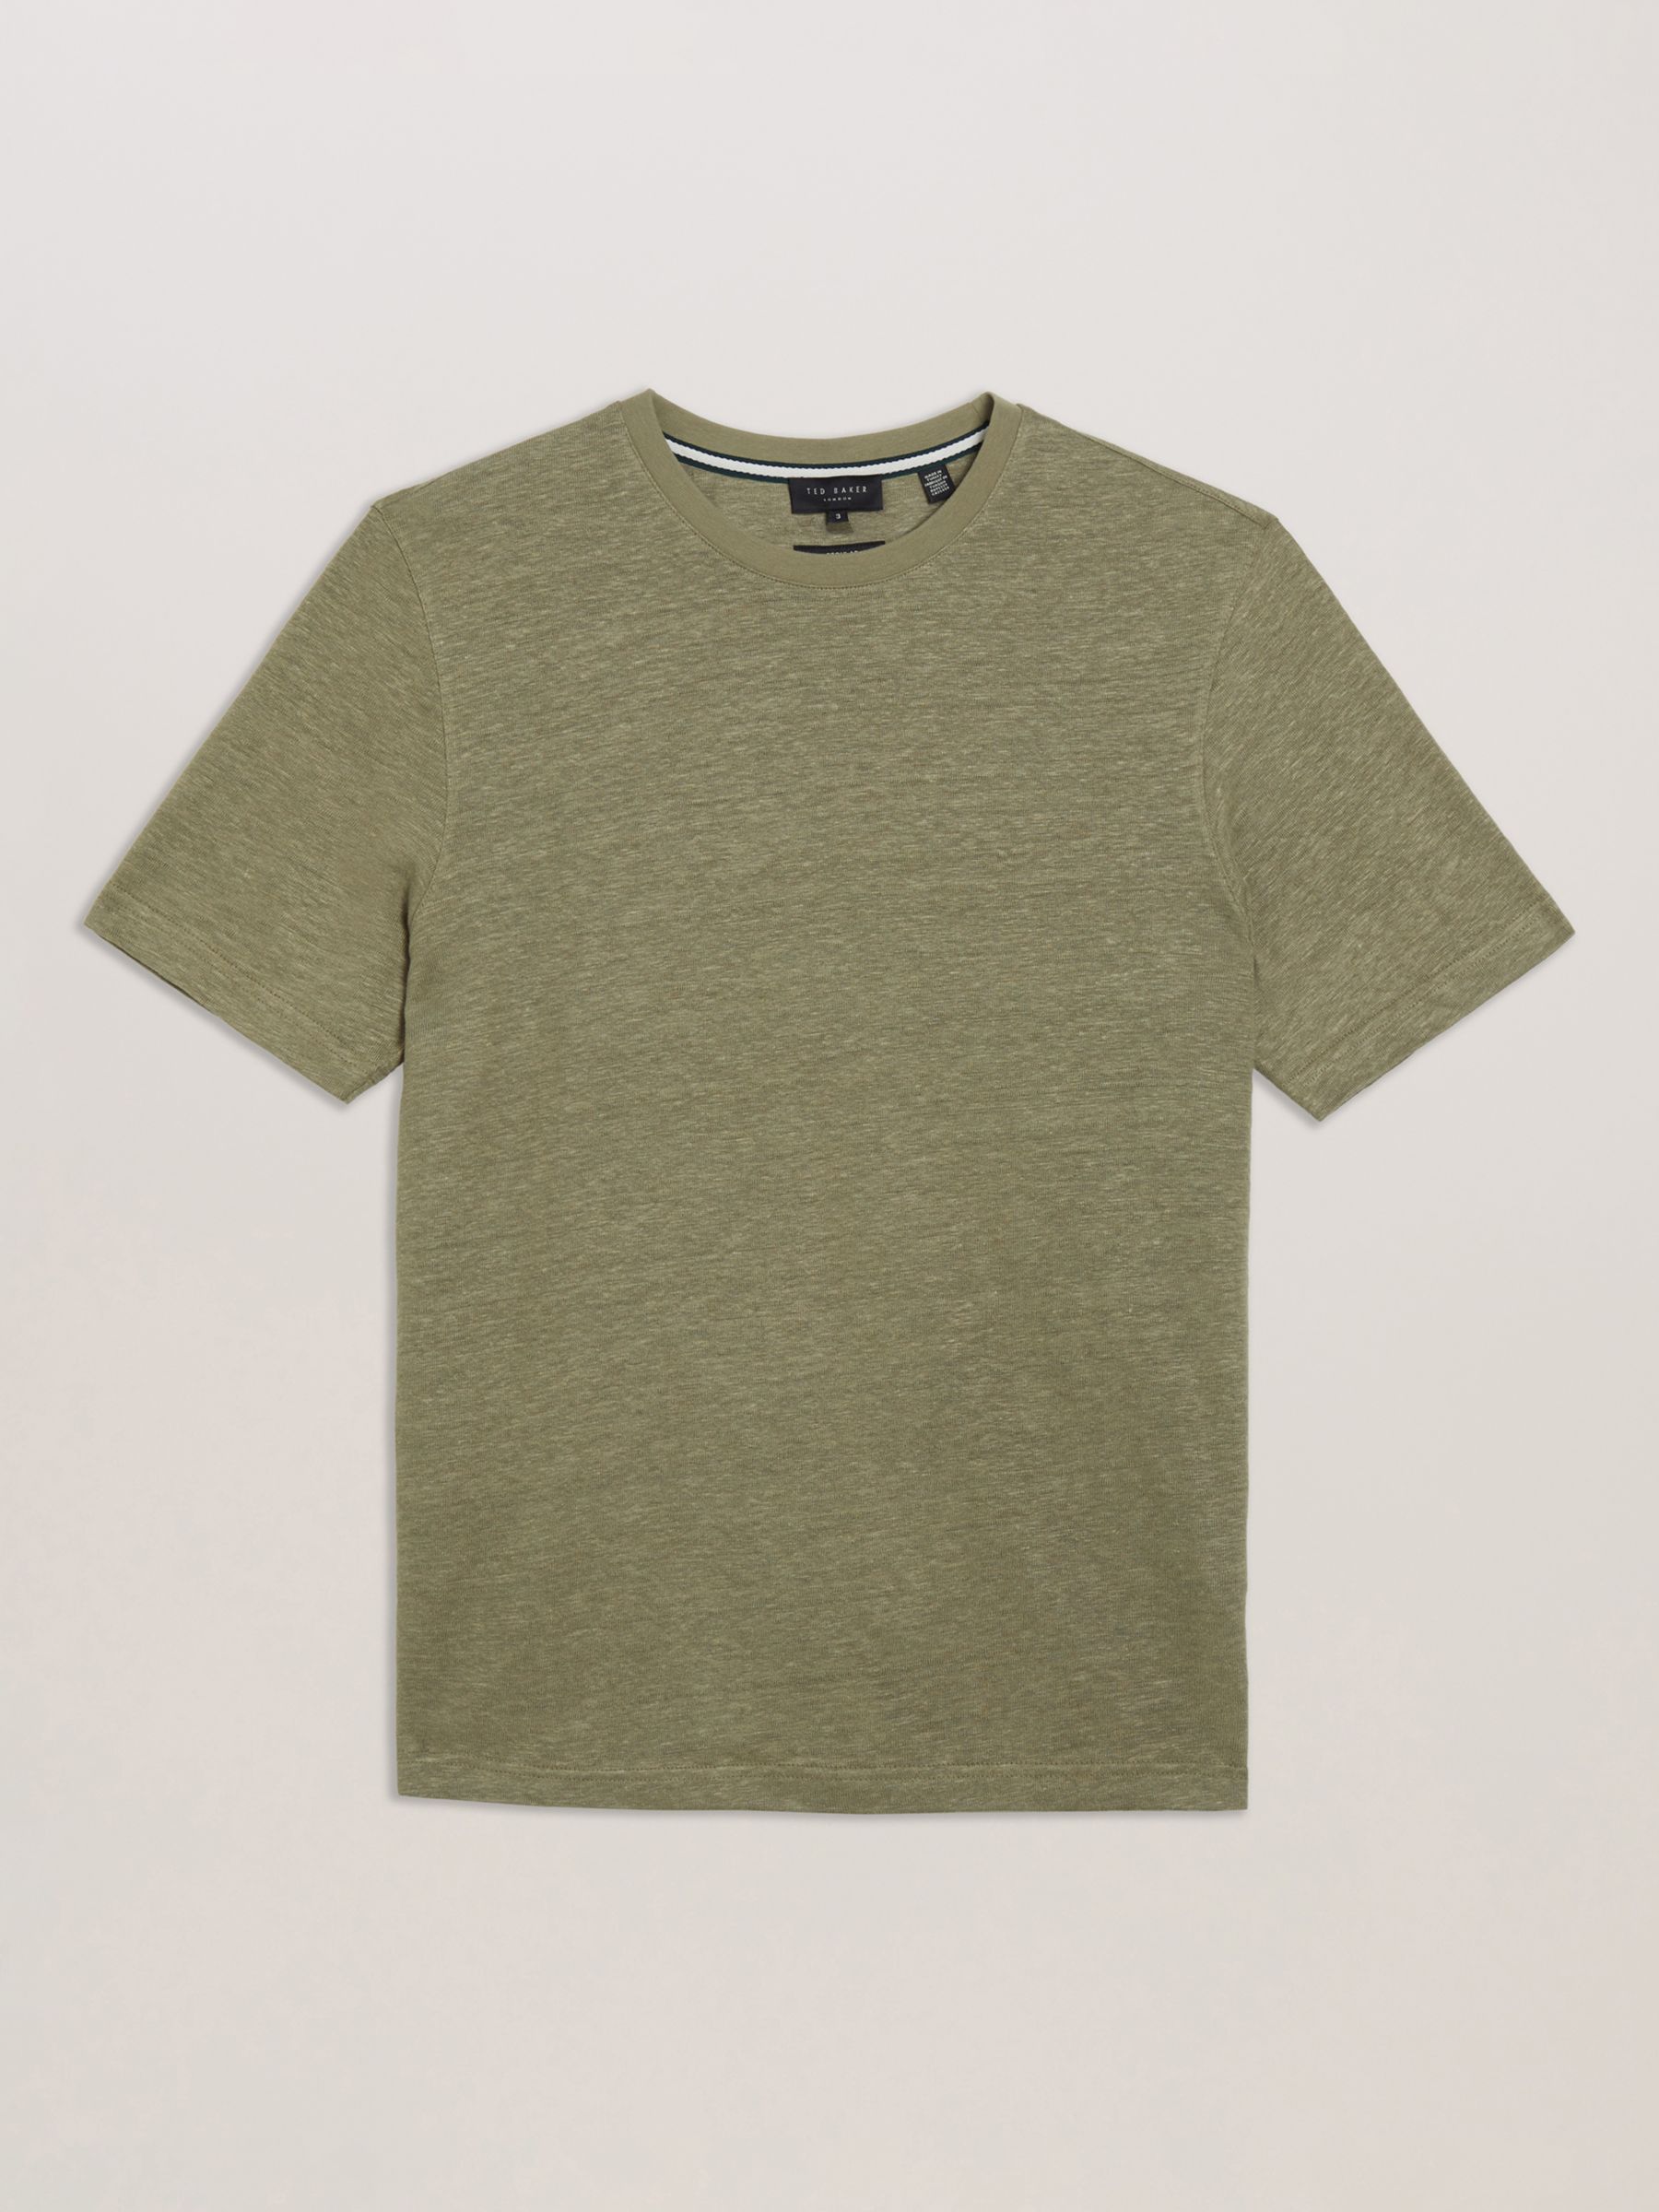 Ted Baker Flinlo Linen T-Shirt, Olive, Olive, XS